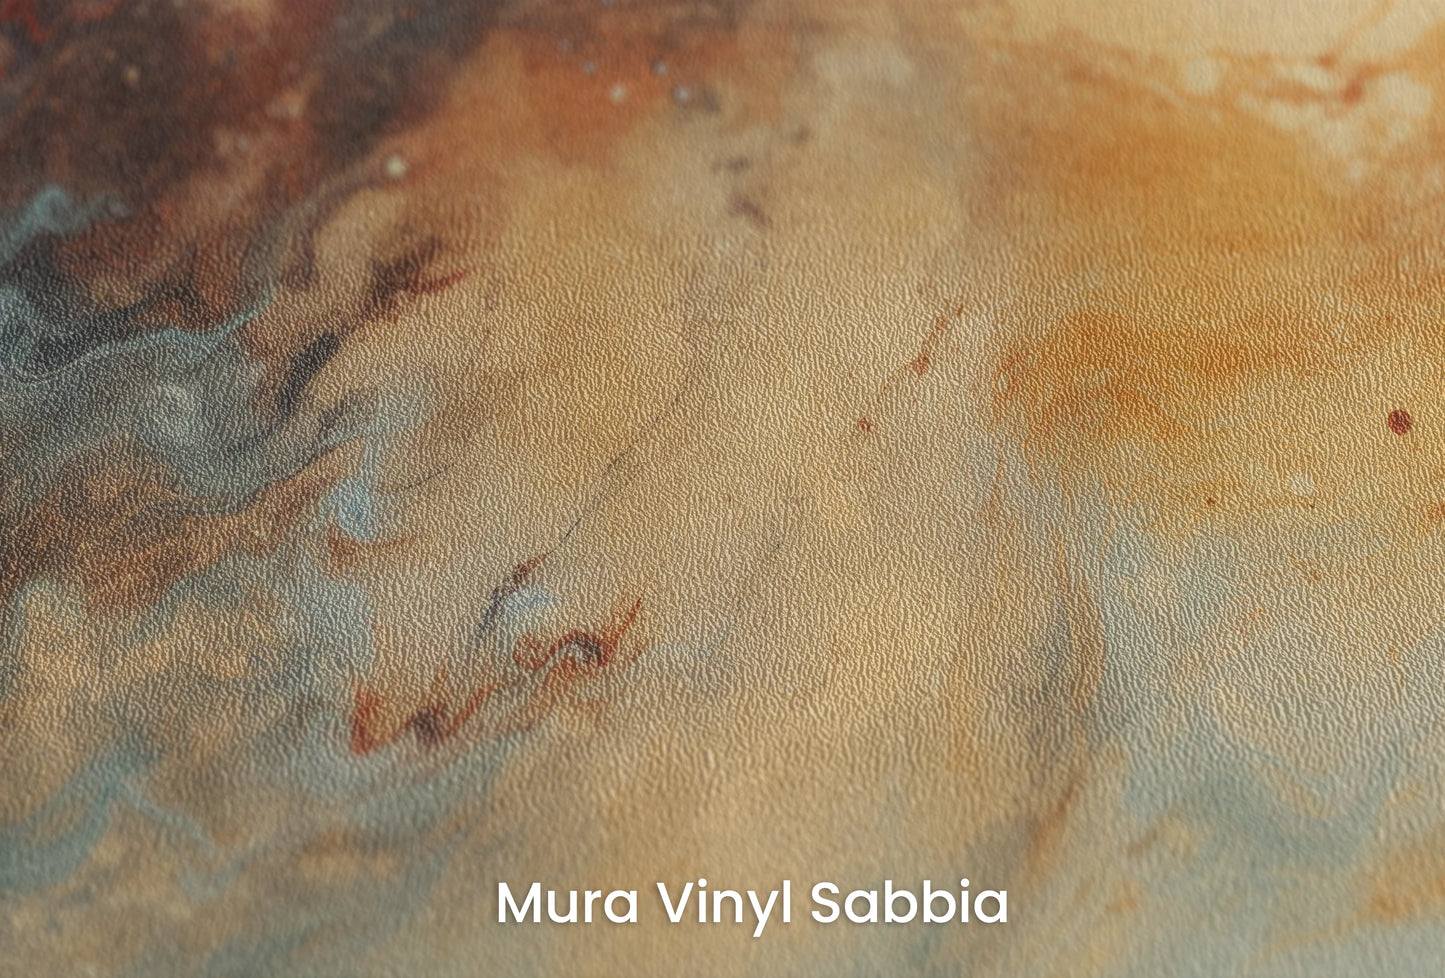 Zbliżenie na artystyczną fototapetę o nazwie Callisto's Vision na podłożu Mura Vinyl Sabbia struktura grubego ziarna piasku.